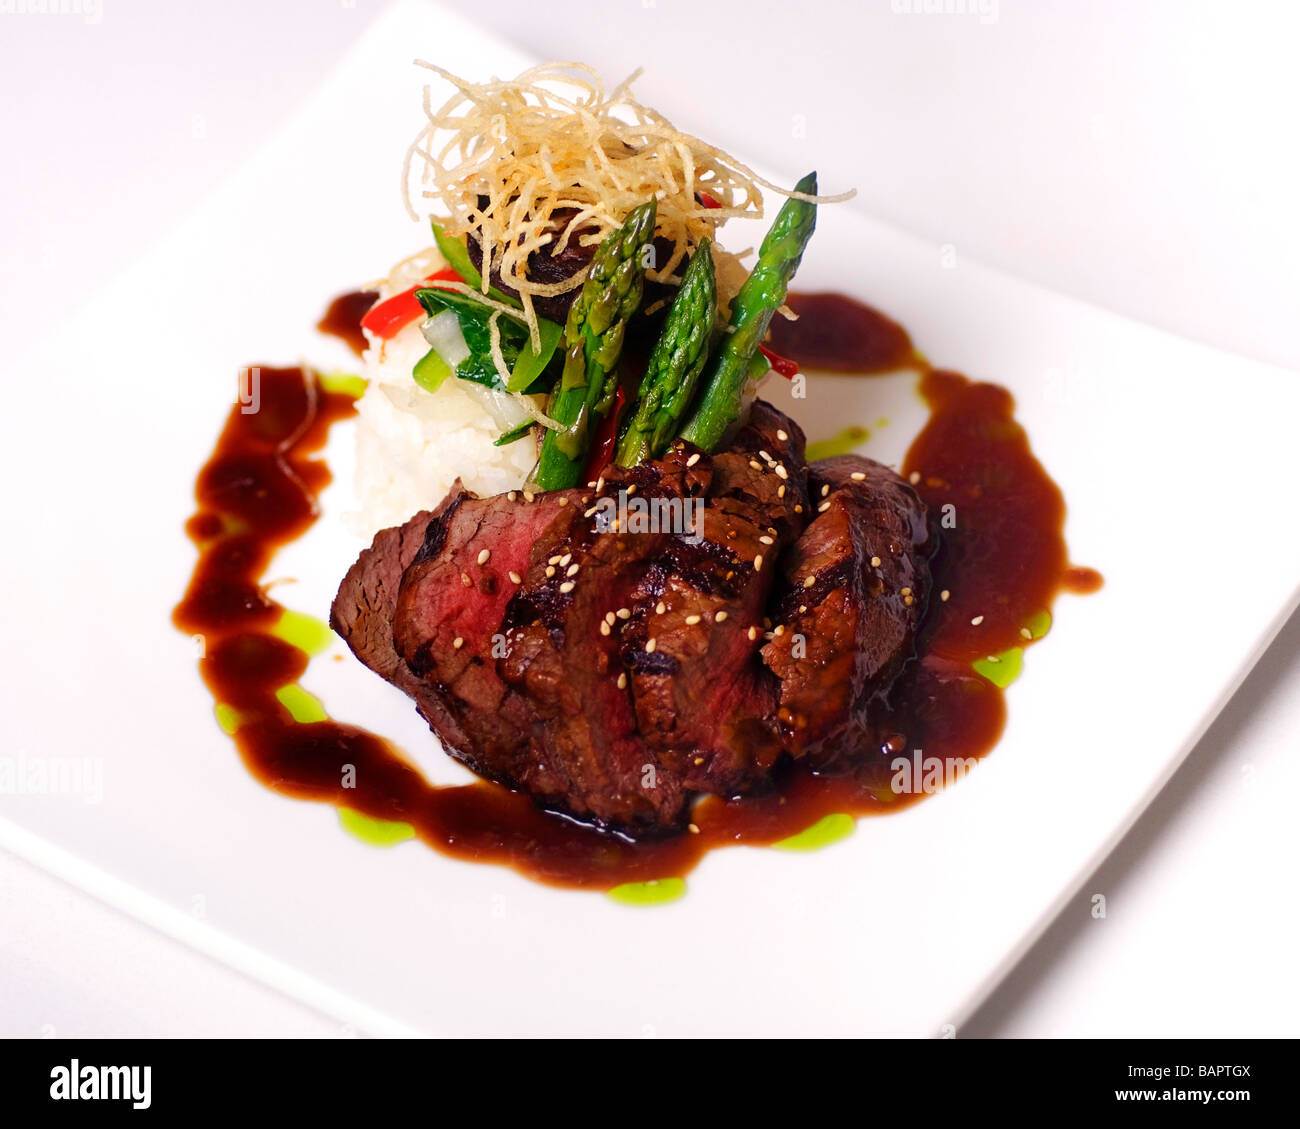 Un filet mignon de boeuf gourmet au restaurant 5 étoiles Photo Stock - Alamy